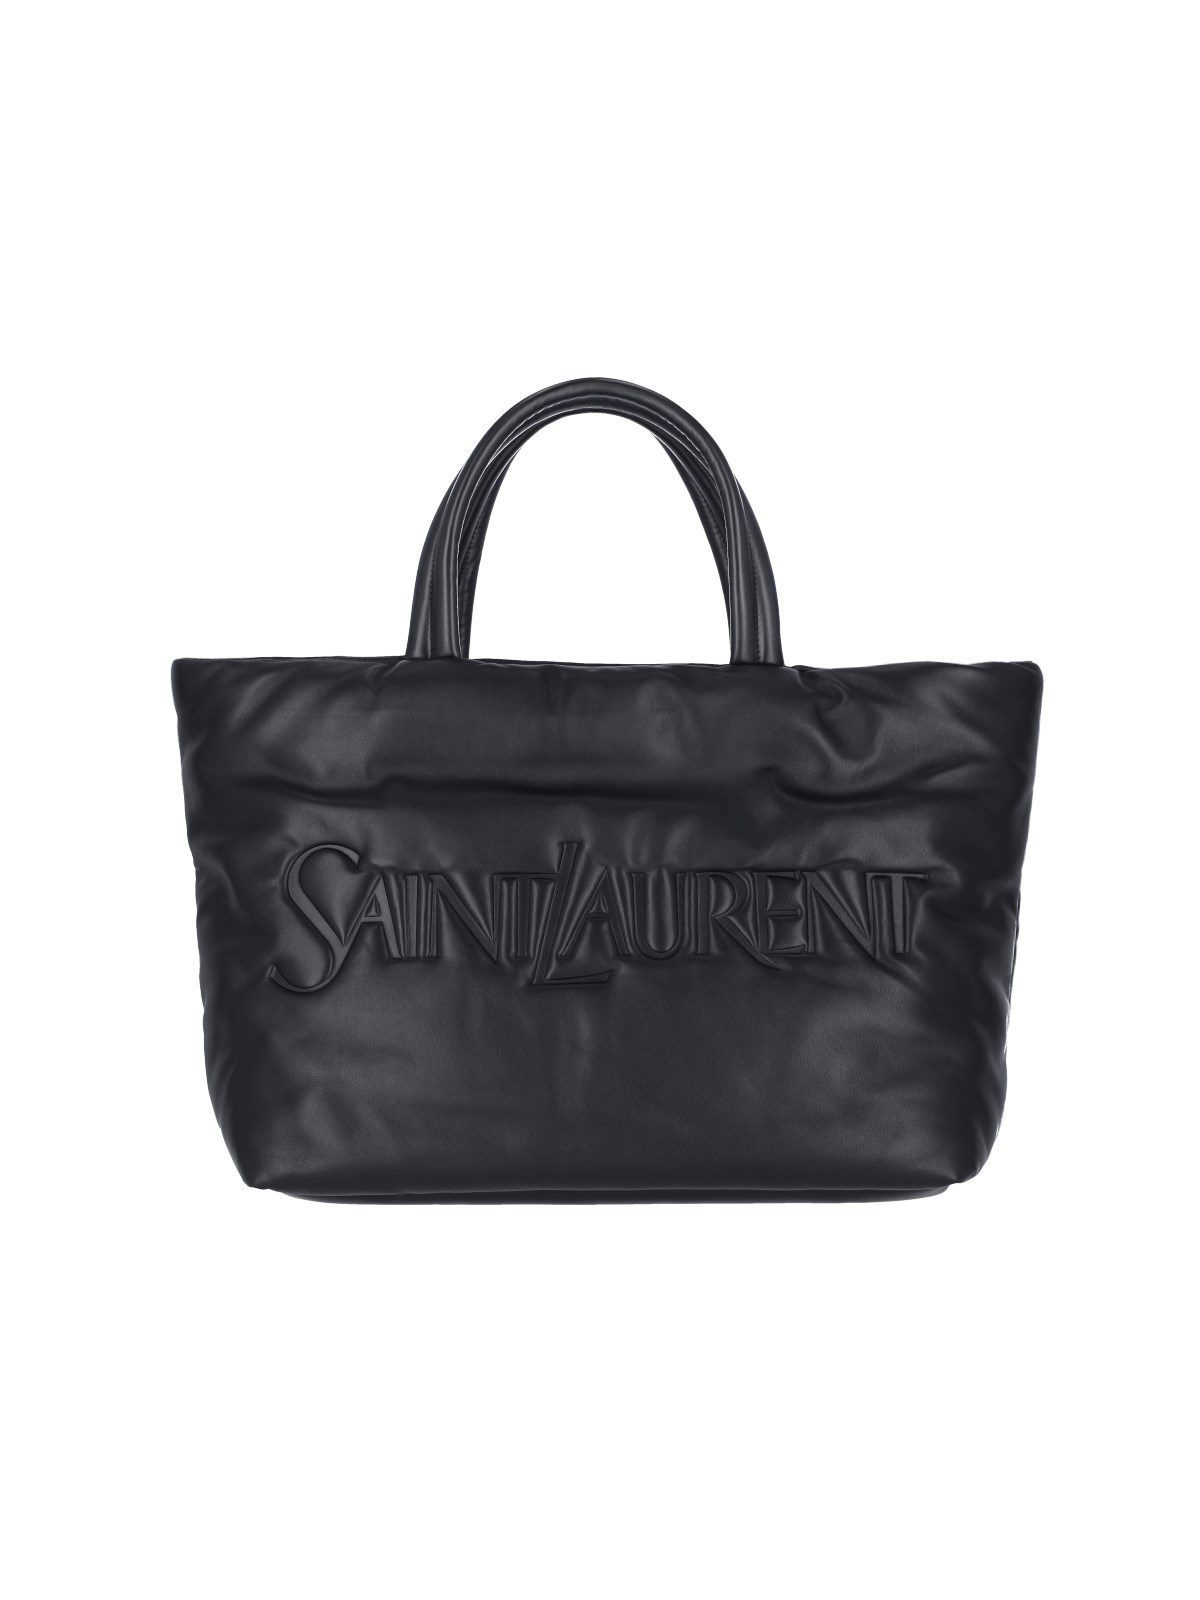 Saint Laurent Logo Tote Bag In Black  